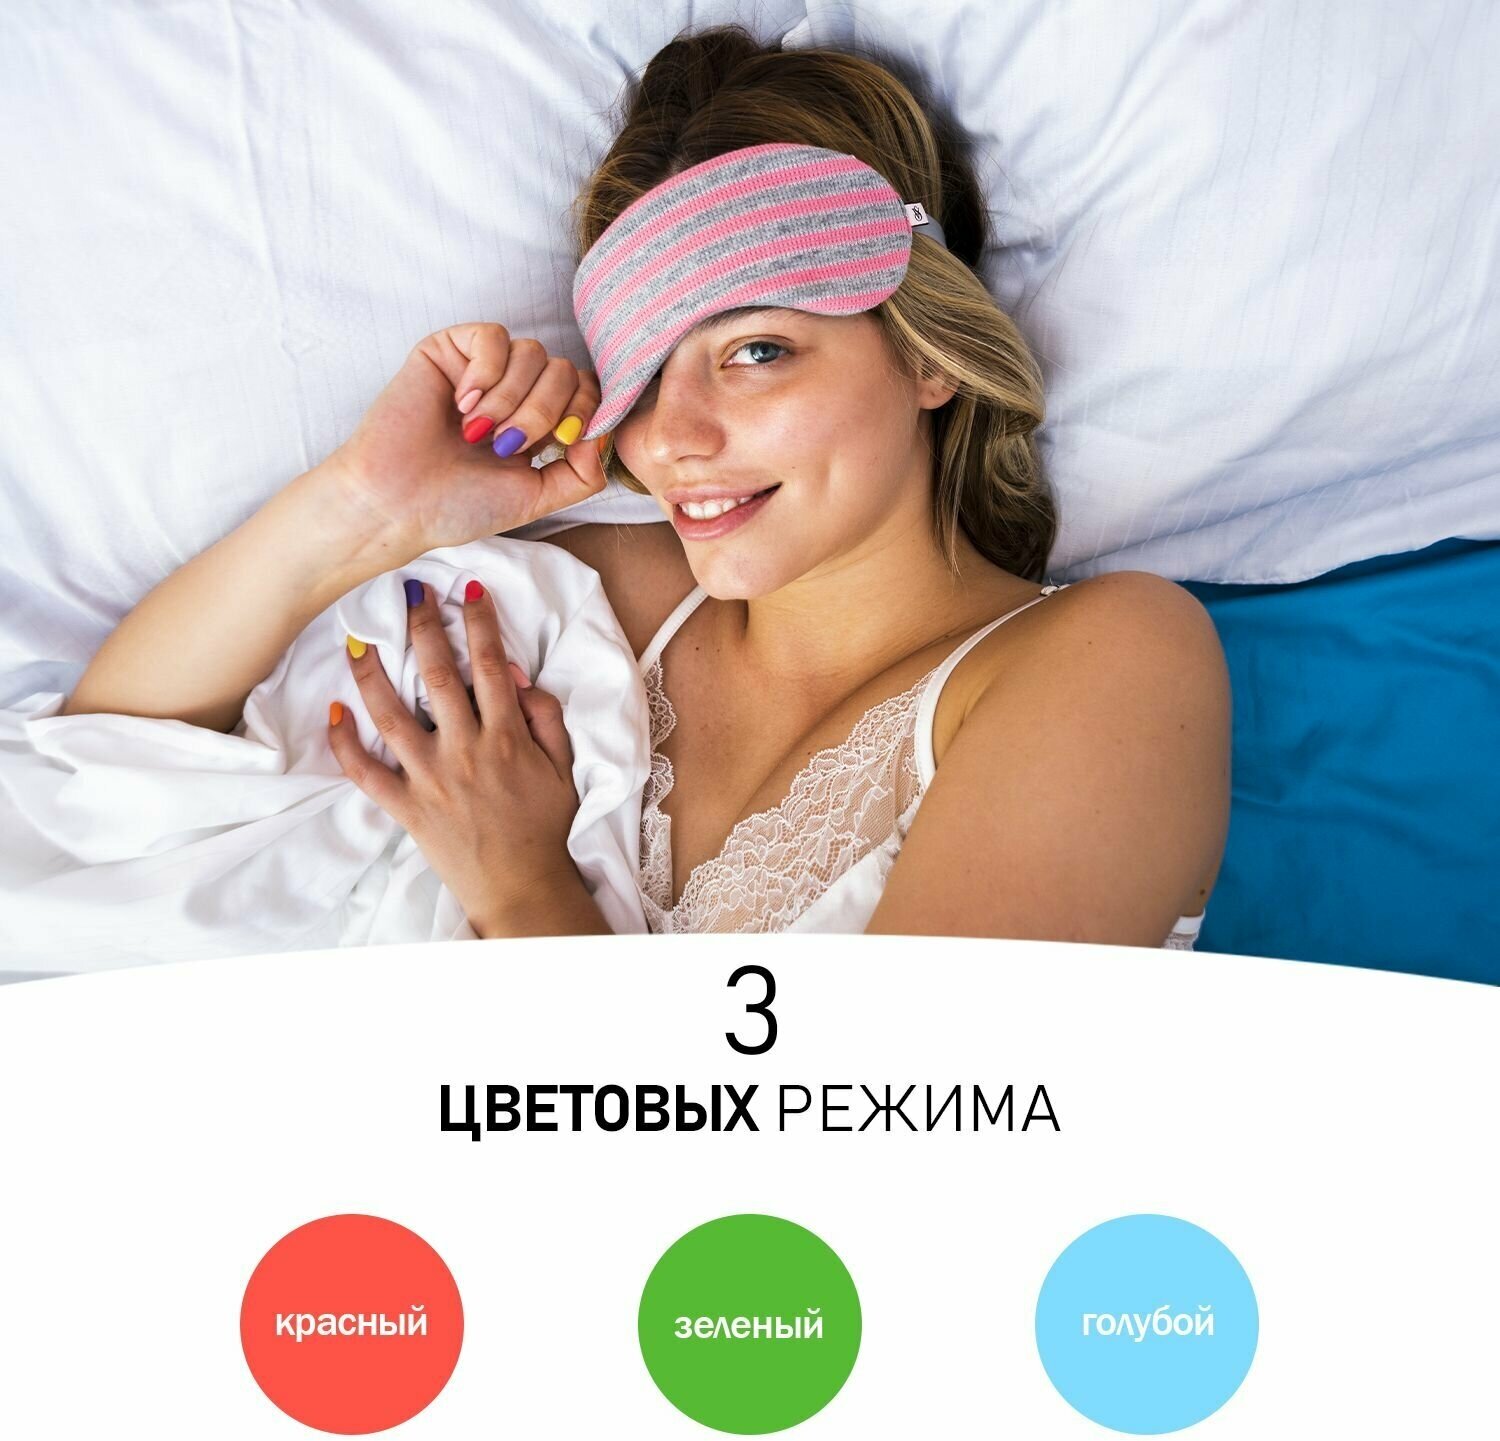 Светодиодный многоцветный ночник для сна мини Хамелеон с мягким освещением, 3 цвета